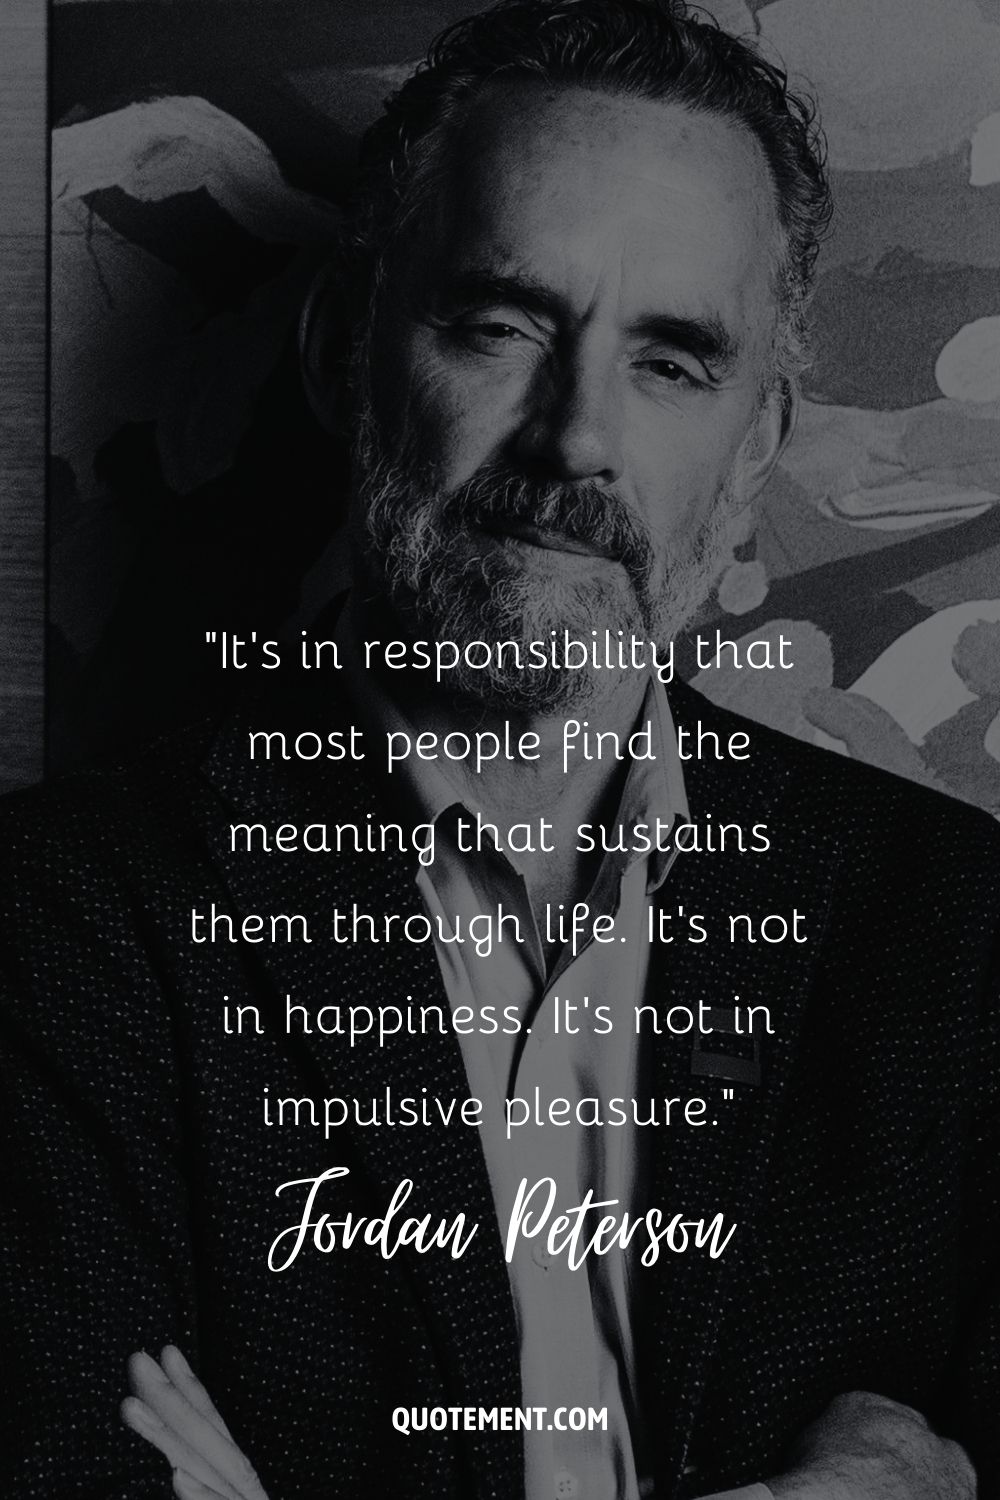 Es en la responsabilidad donde la mayoría de las personas encuentran el sentido que les sostiene en la vida. No es la felicidad. No es en el placer impulsivo